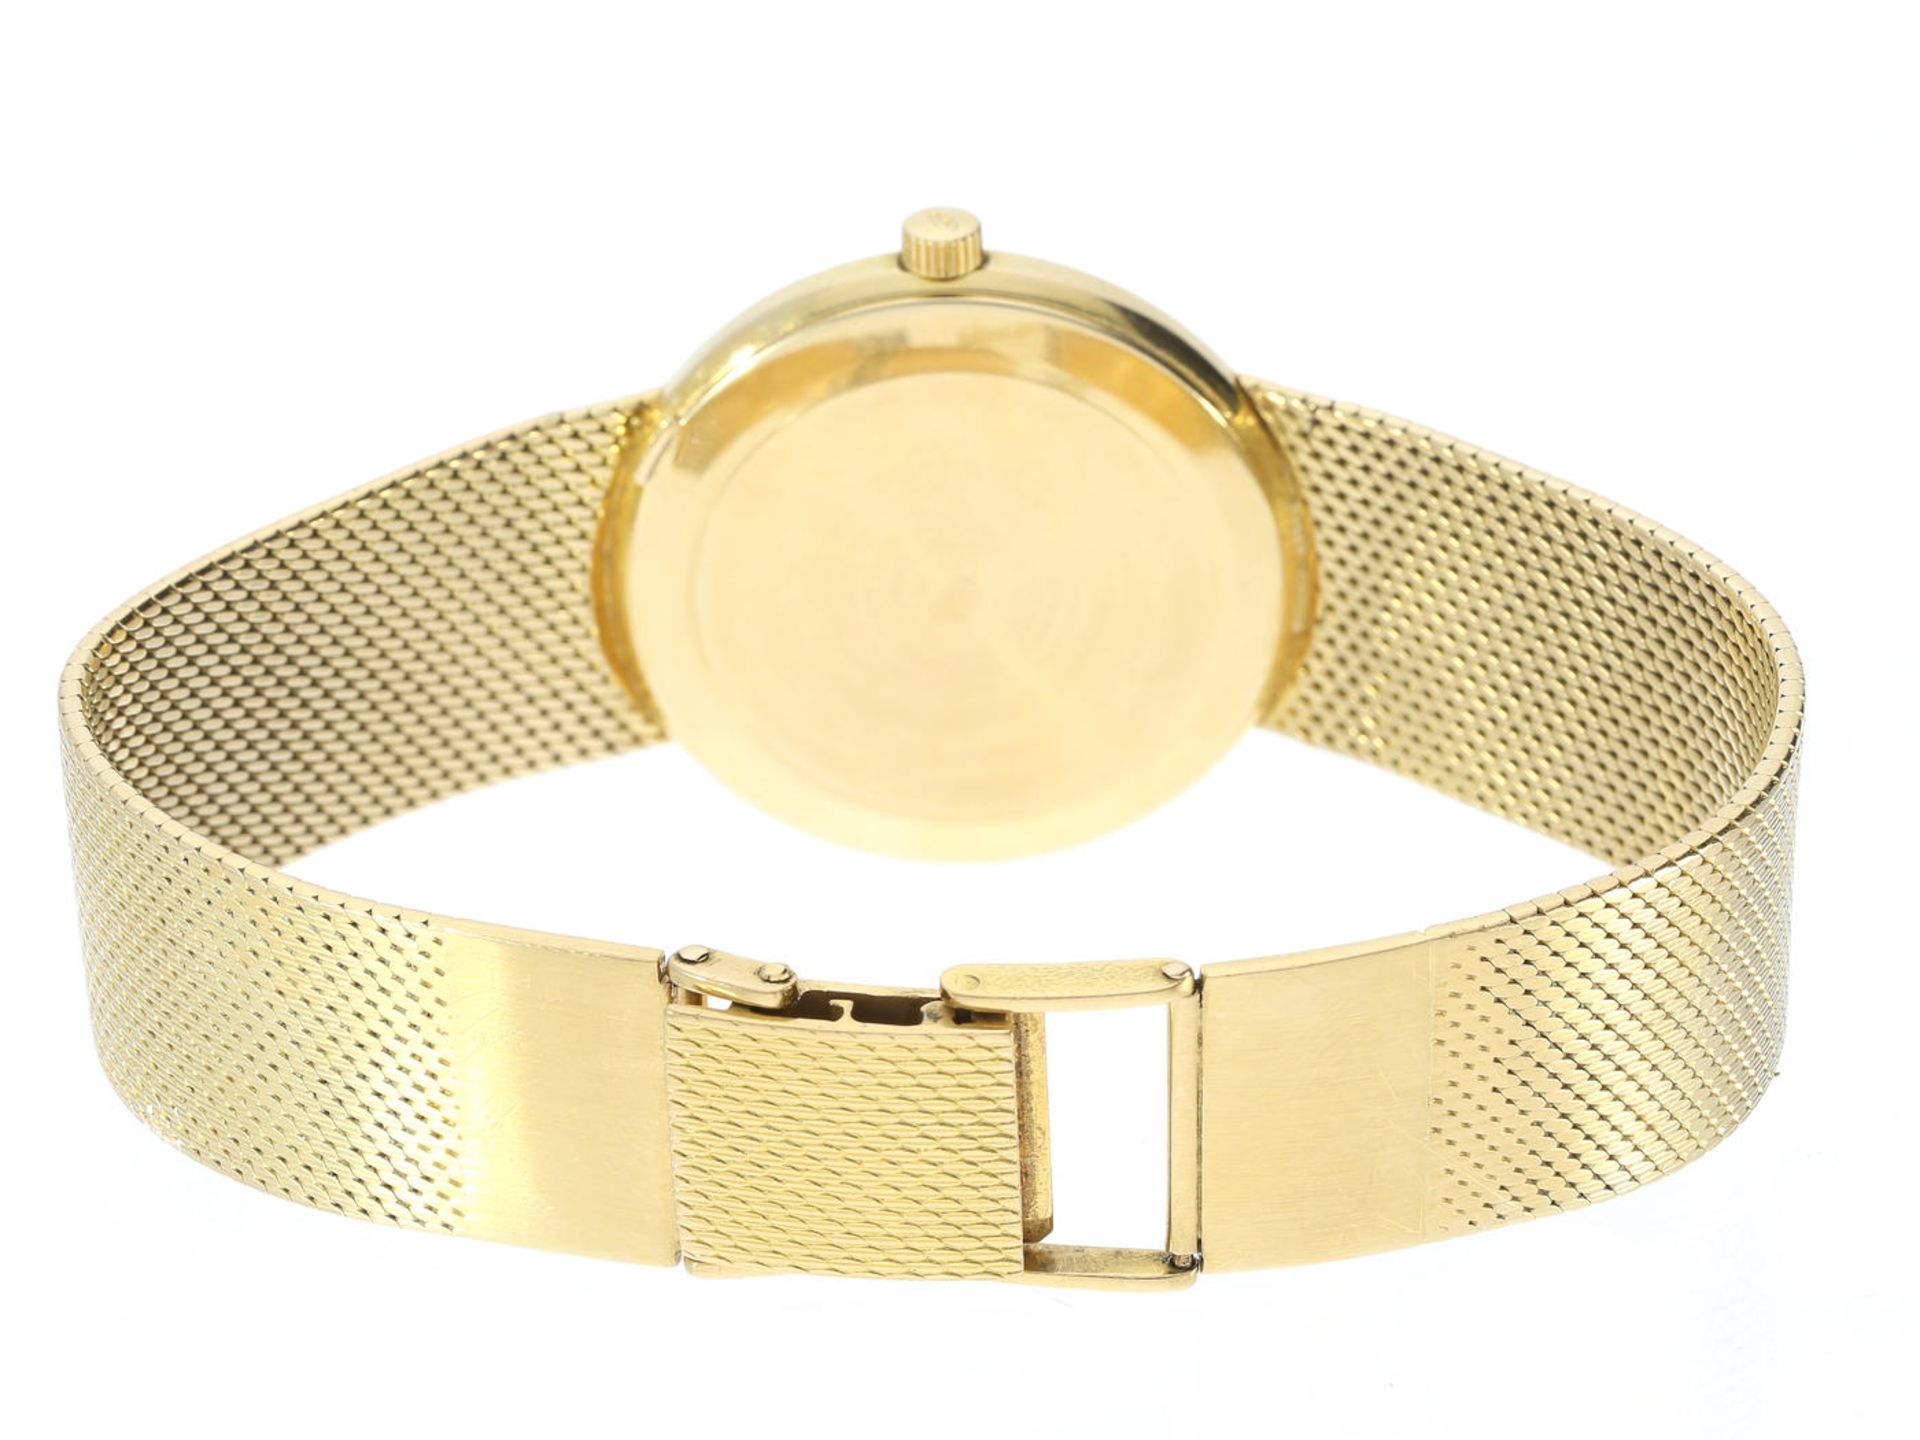 Armbanduhr: goldene Herrenuhr von IWC, ca. 1973 Ca. 34mm, ca. 84g, ca. 20cm lang, 18K Gold, - Bild 2 aus 3